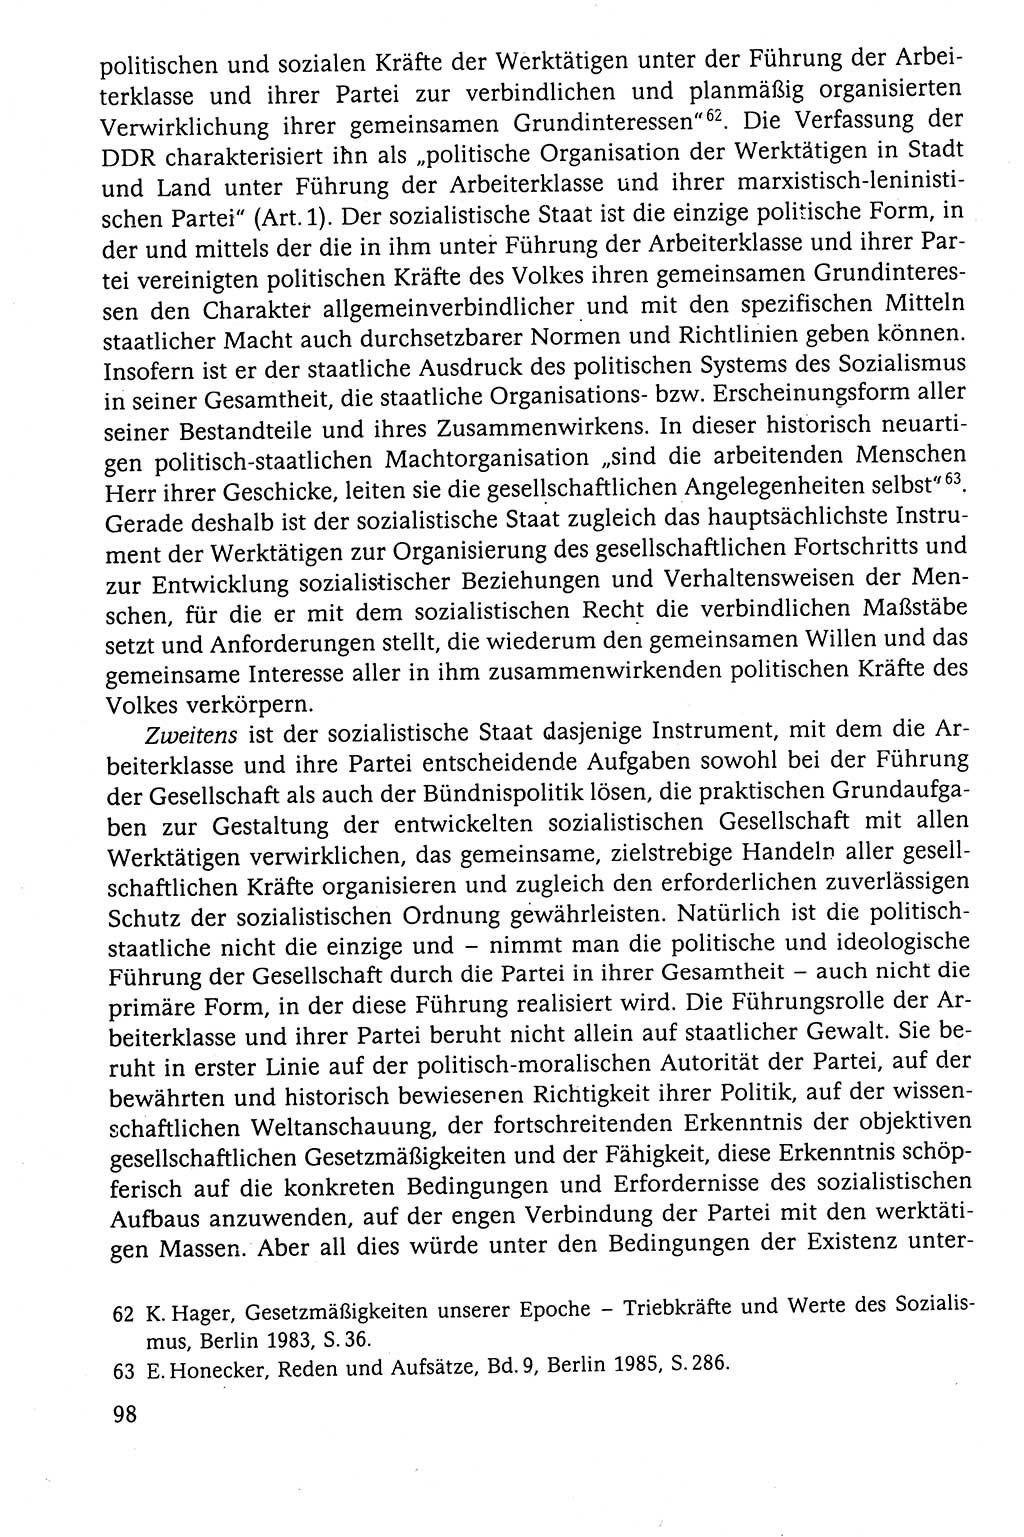 Der Staat im politischen System der DDR (Deutsche Demokratische Republik) 1986, Seite 98 (St. pol. Sys. DDR 1986, S. 98)